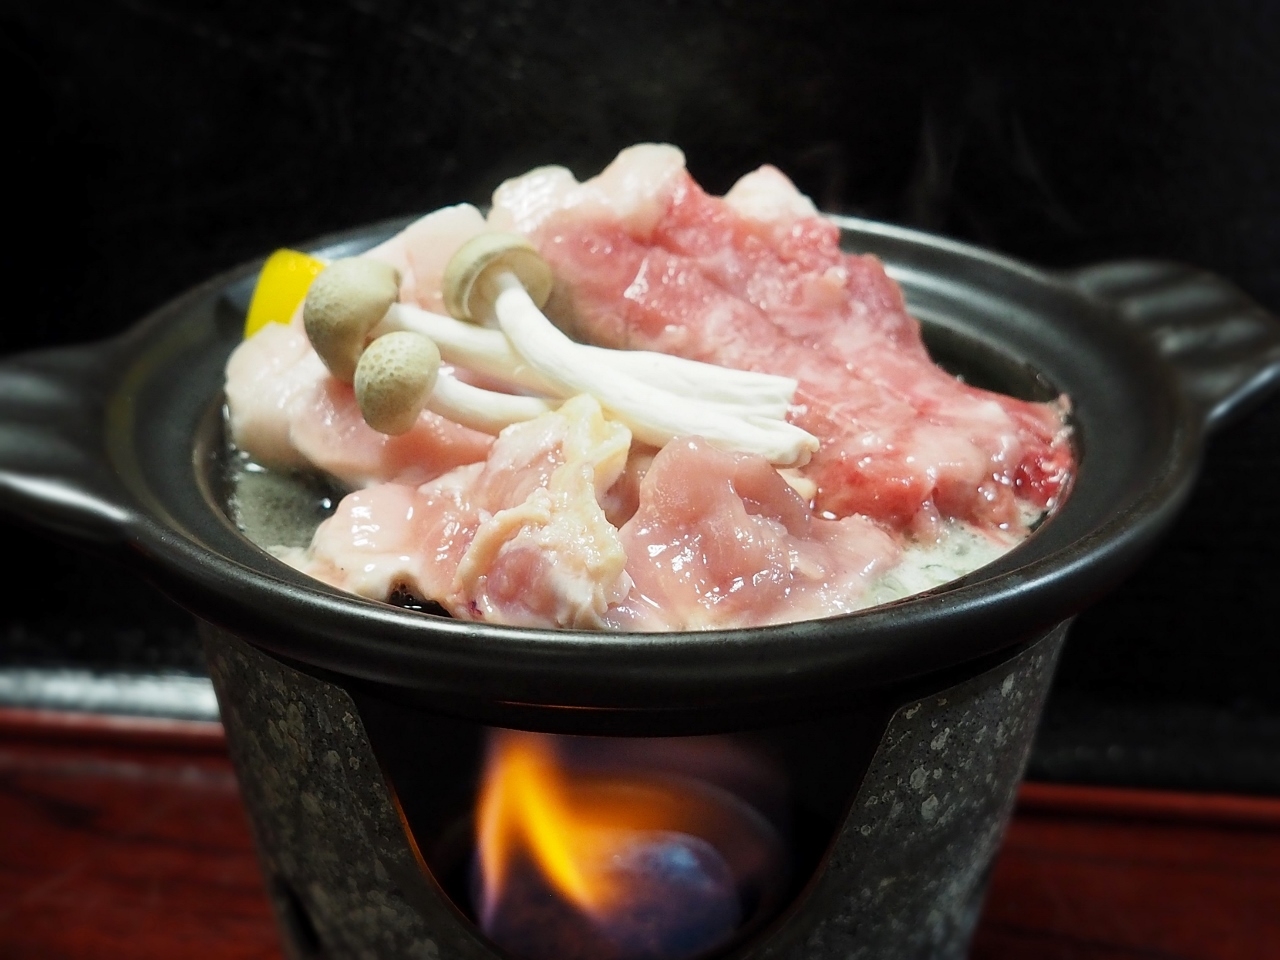 【満腹グルメプラン】信州産肉3種（牛・ポーク・鶏）陶板焼き【温泉旅】